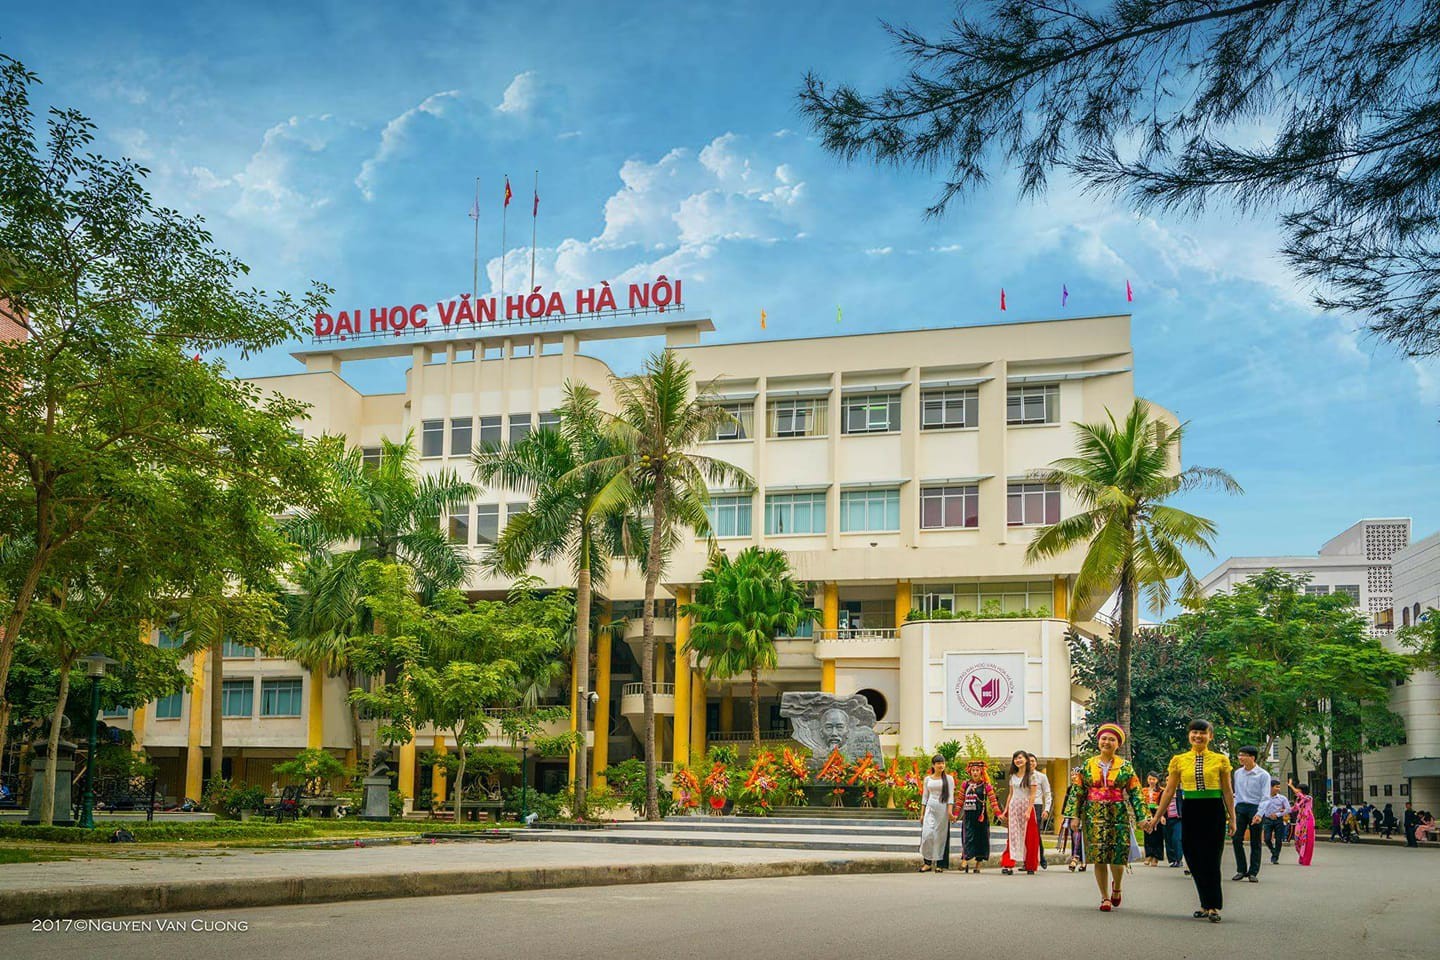 Công ty Cổ phần Đào tạo Huấn luyện Nghiệp vụ Hàng không Việt Nam thăm và làm việc với Trường Đại học Văn hóa Hà Nội